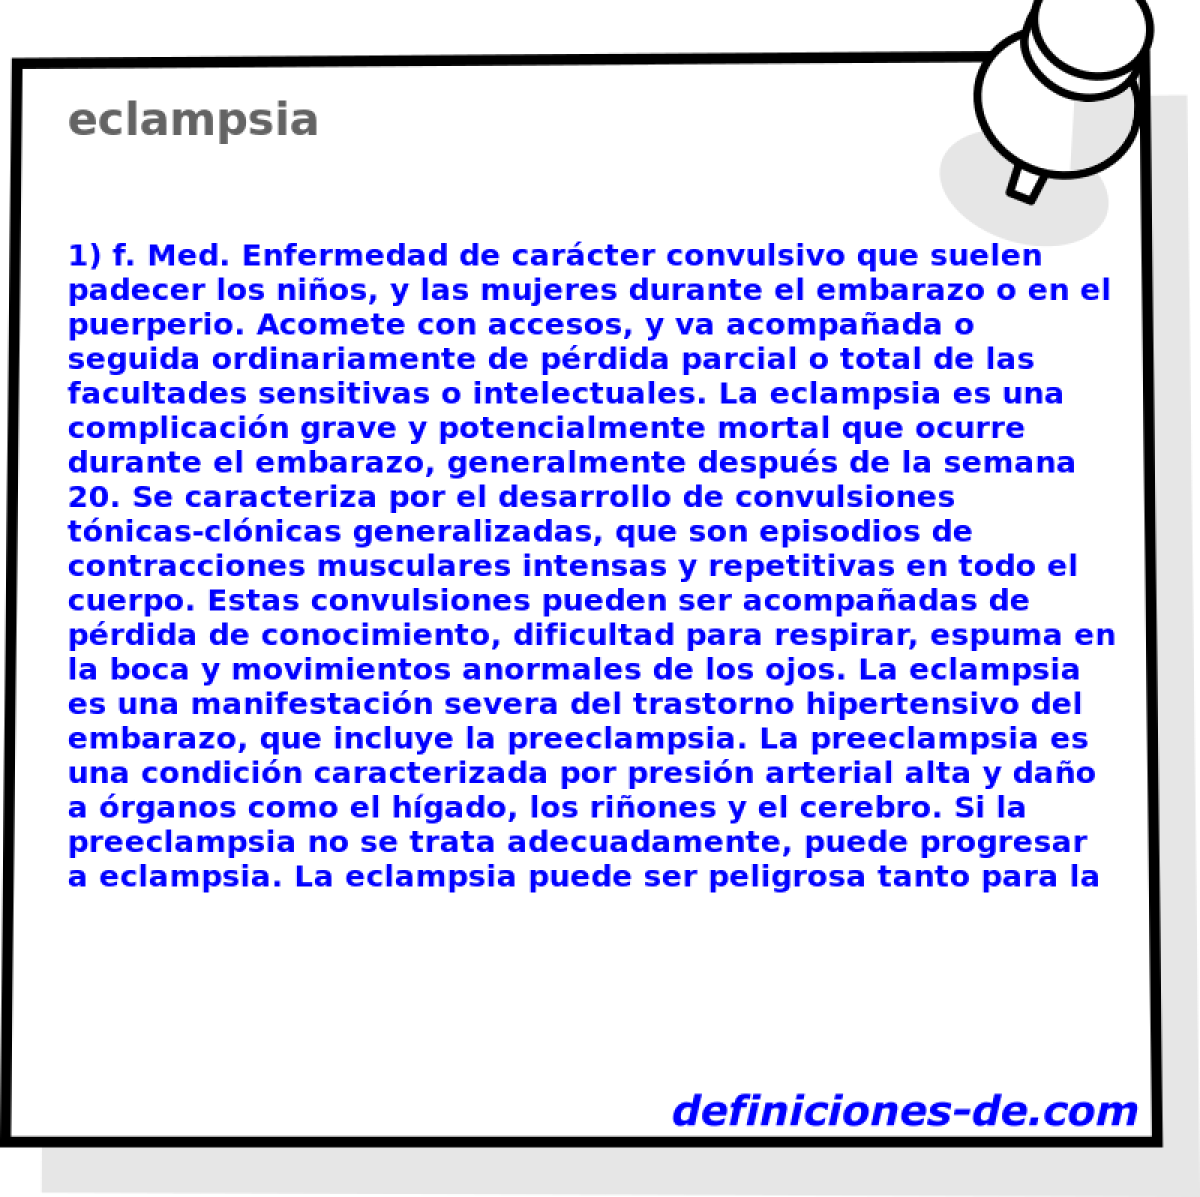 eclampsia 